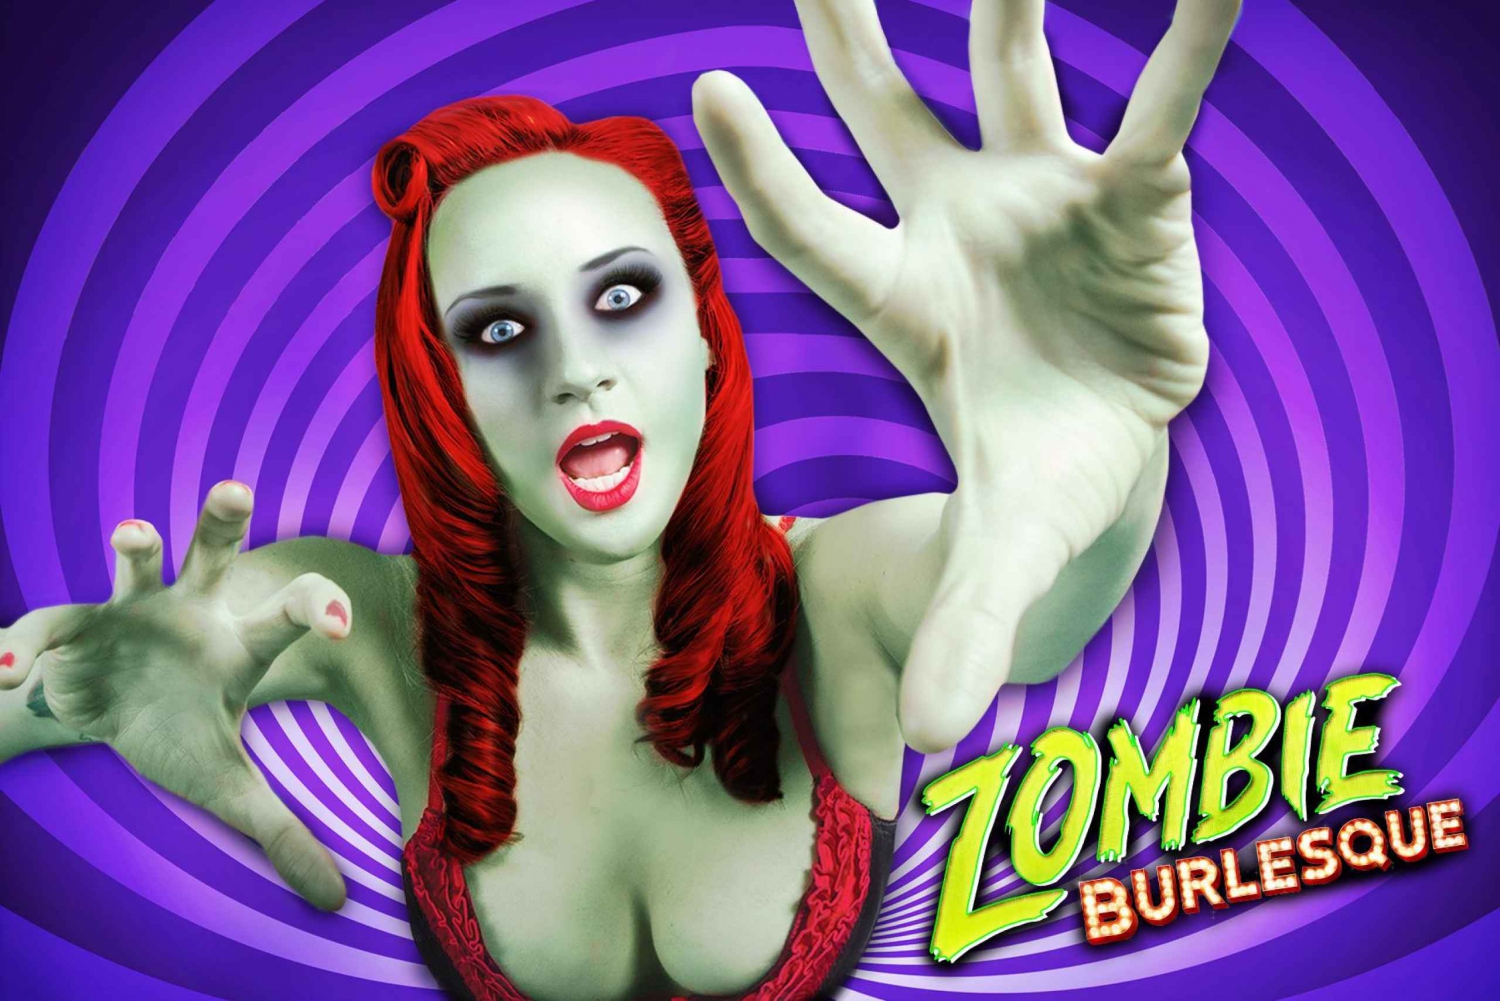 Las Vegas: Zombie Burlesque Comedy Musical Show Bilet wstępu